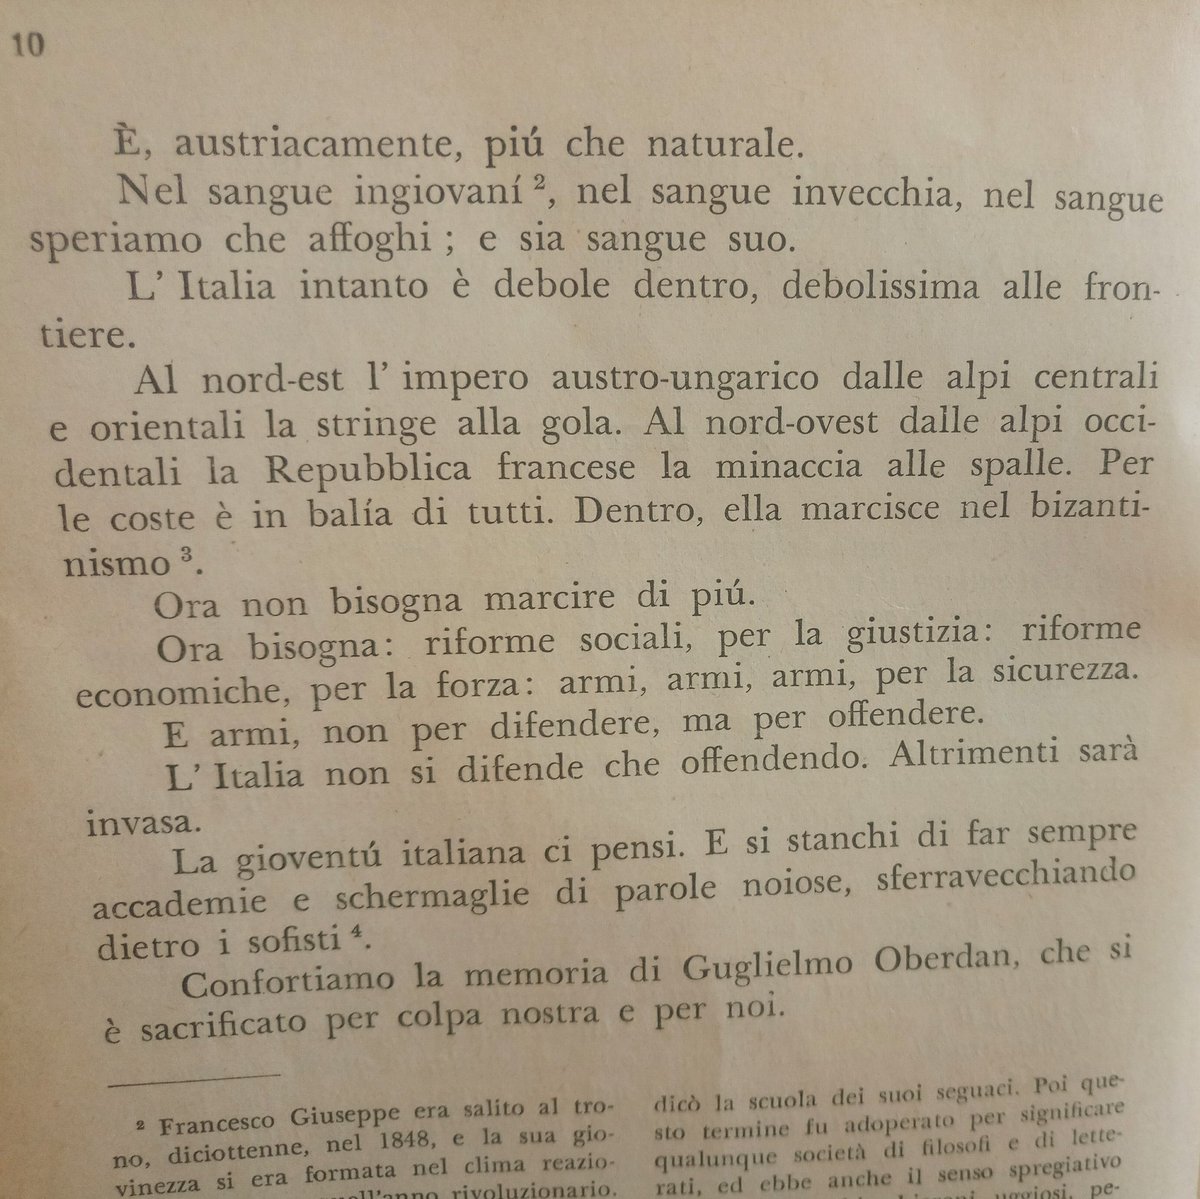 Il messaggio di G. Carducci all'imperatore austriaco Francesco Giuseppe, per la condanna a morte di Guglielmo Oberdan, giovane studente triestino. 

L'operosità sociale degli intellettuali di un tempo.